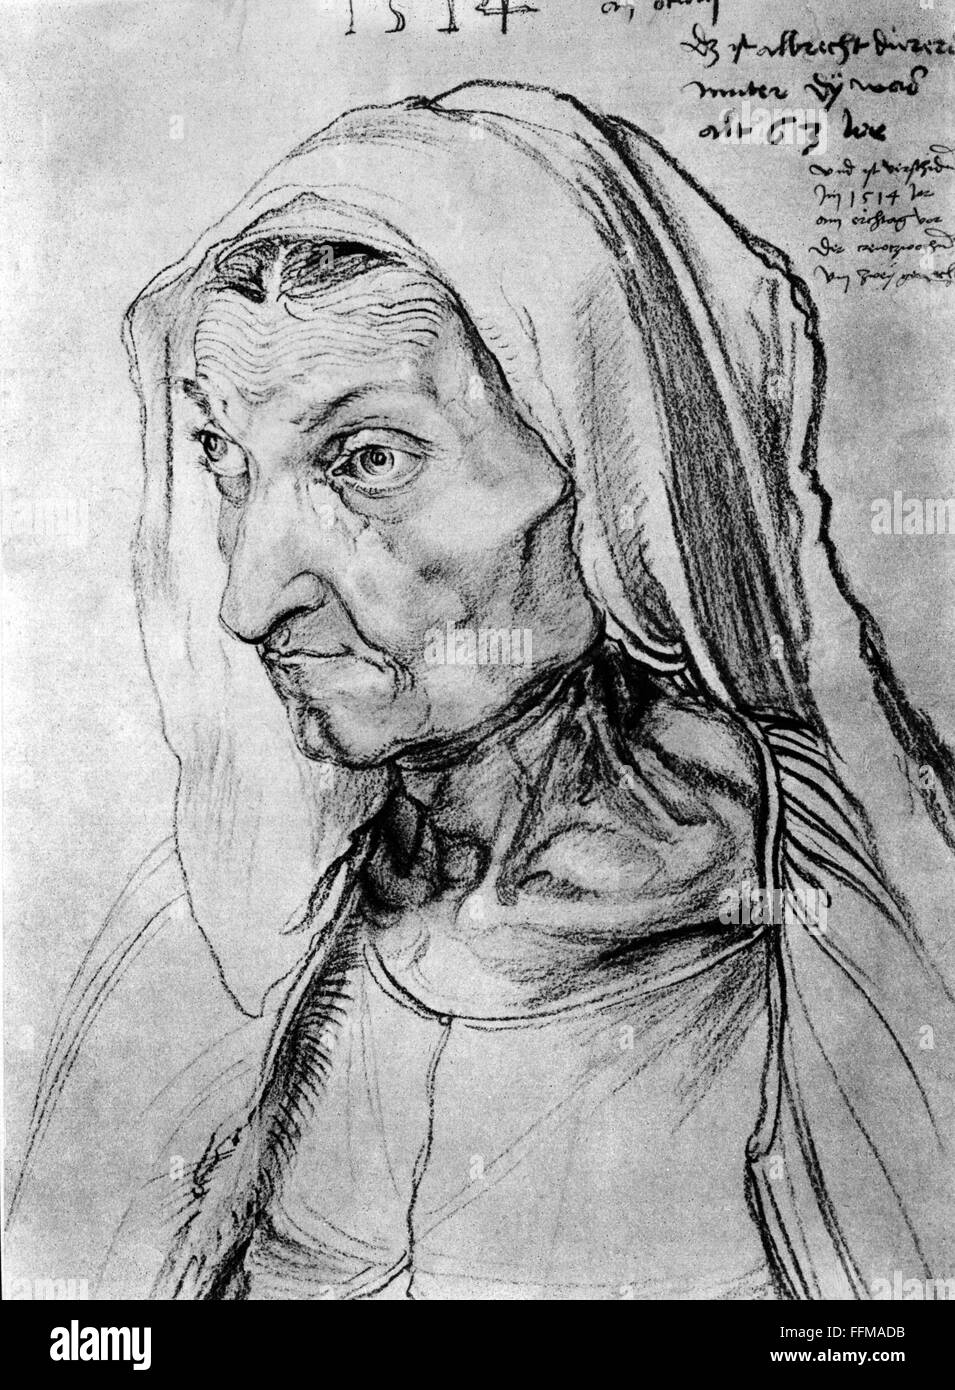 Duerer, Barbara, 1452 - 16.5.1514, mère de Albert Duerer, 'Portrait de la mère malade mortellement', dessin au fusain par Albert Duerer, Nuremberg, 1514, l'artiste n'a pas d'auteur pour être effacé Banque D'Images